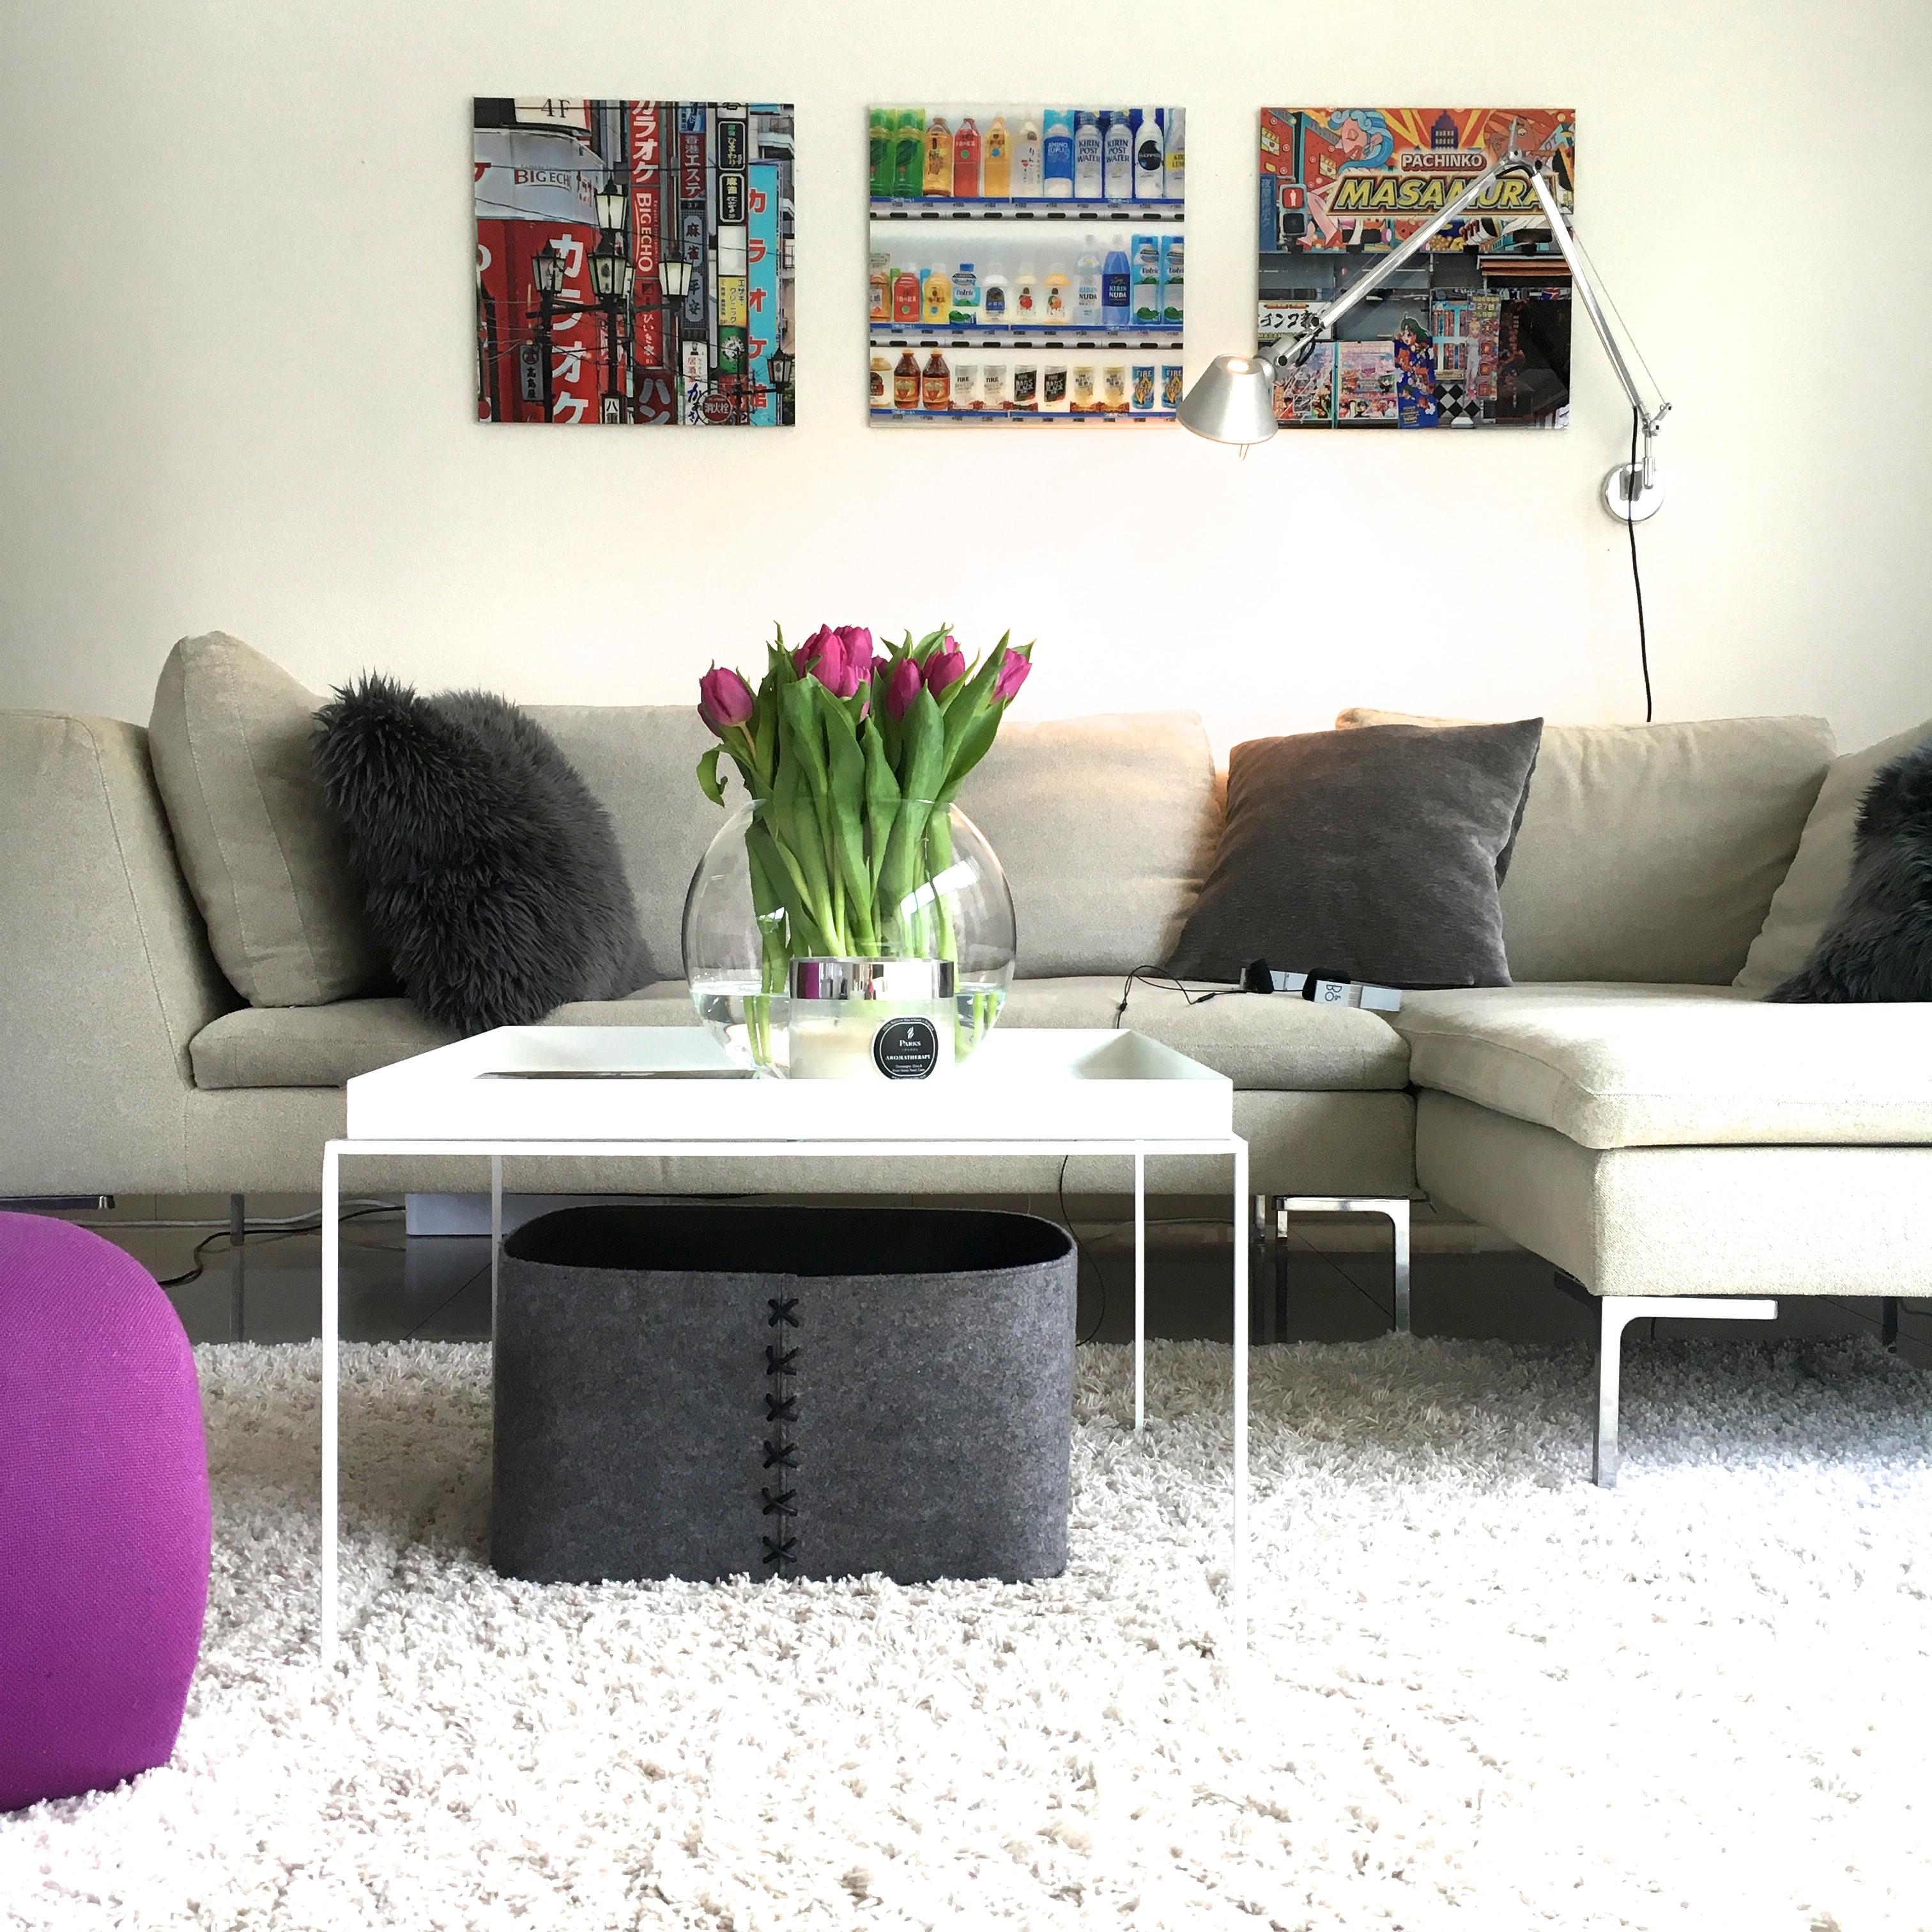 Wohnen #beistelltisch #sofa #bilderwand ©ALL ABOUT DESIGN by Christina Harmsen